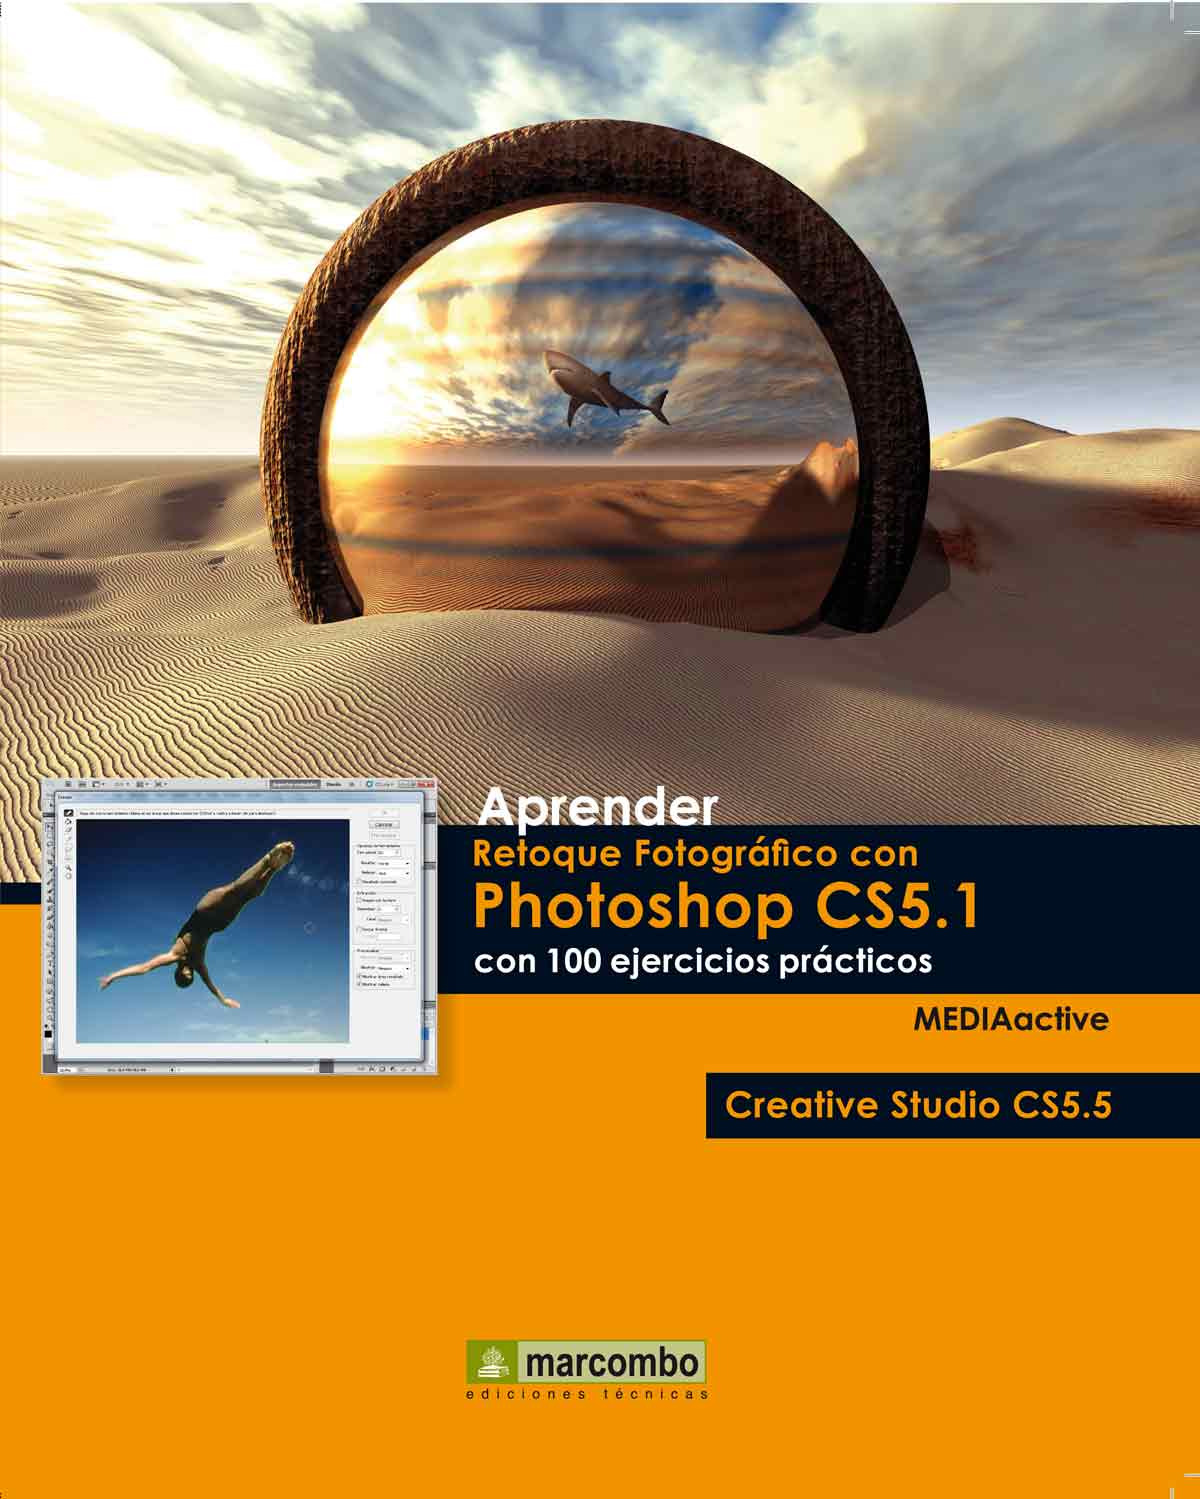 Aprender retoque fotogrÁfico con photoshop cs5.1 c - Mediaactive